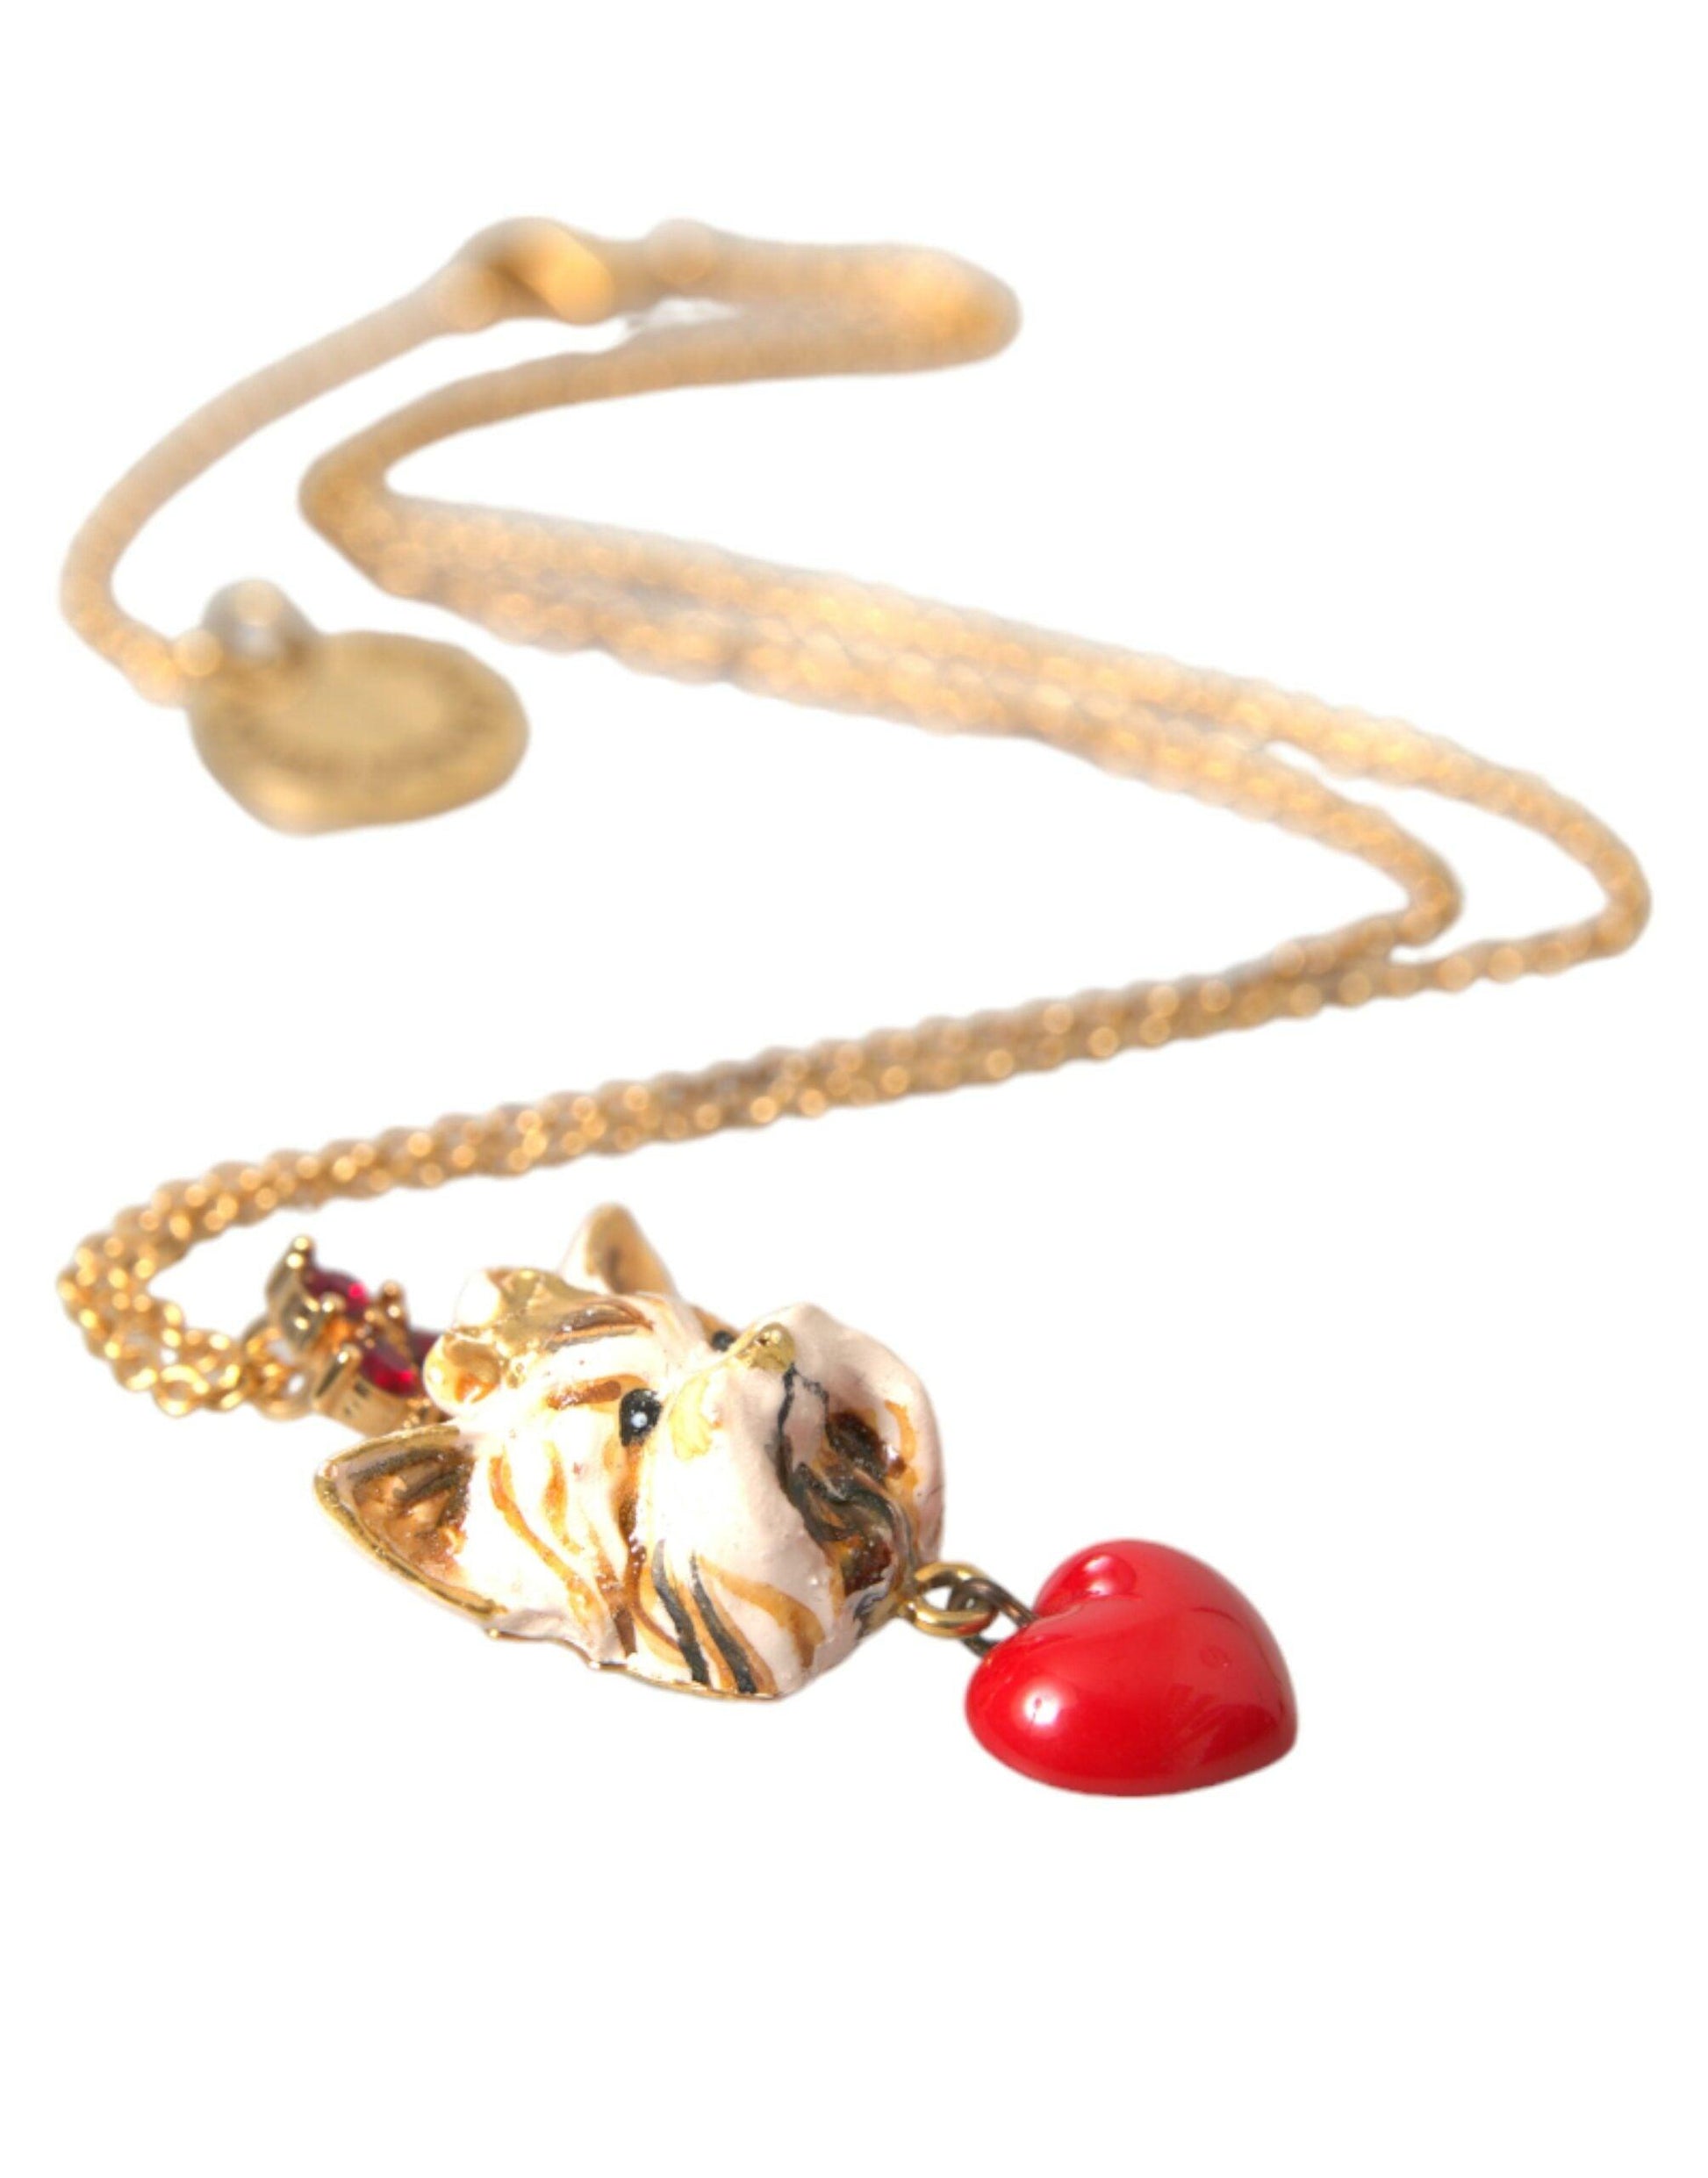 Dolce & Gabbana Gold Brass Chain Dog Heart Pendant Charm Necklace - PER.FASHION